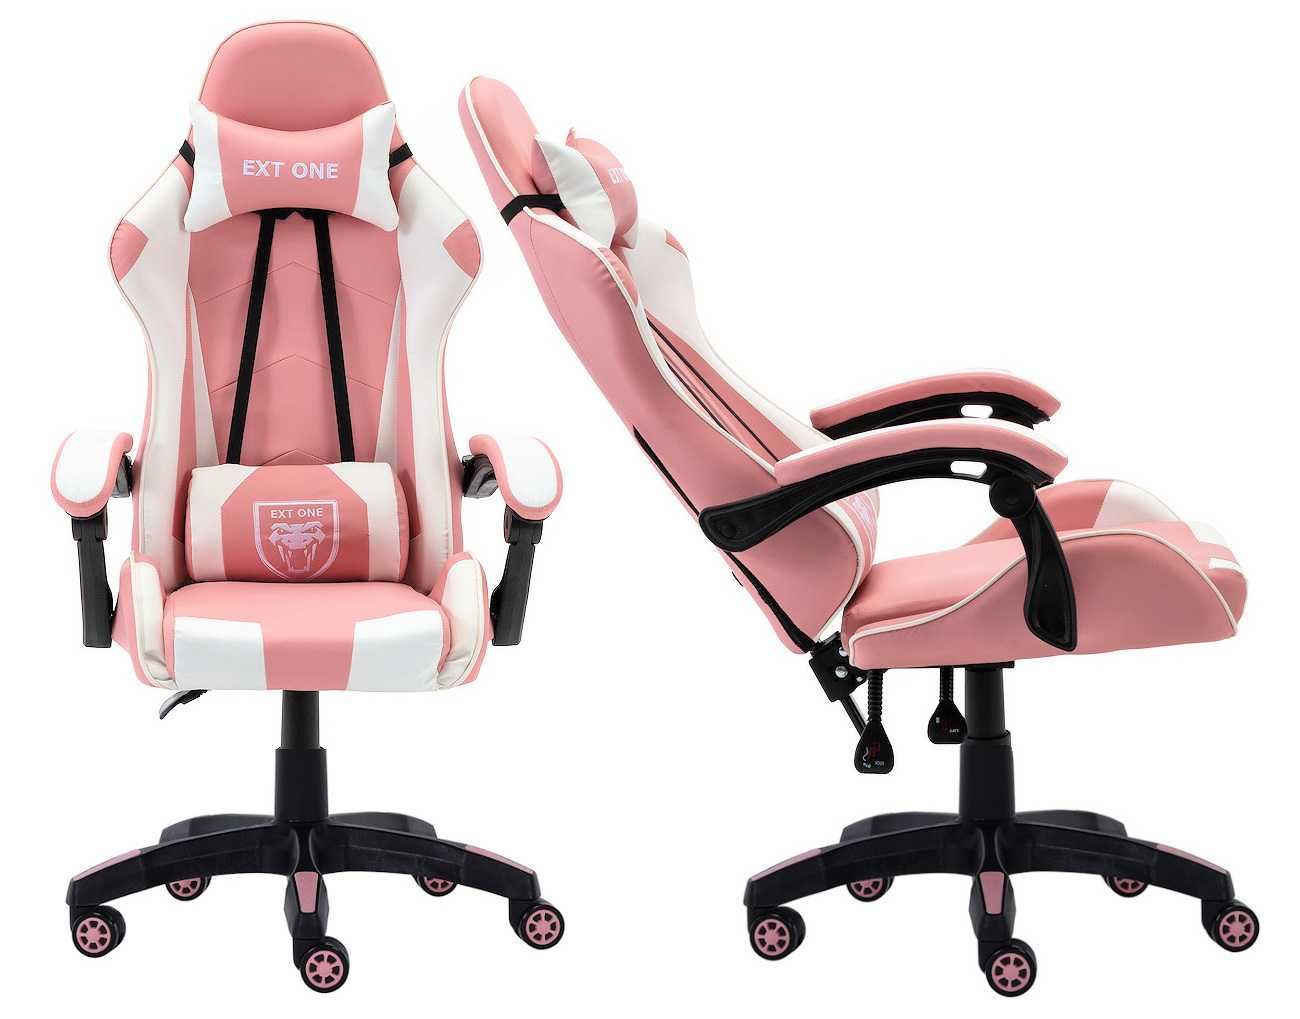 Krzesło do komputera Gamingowe Extreme Ext One Pink